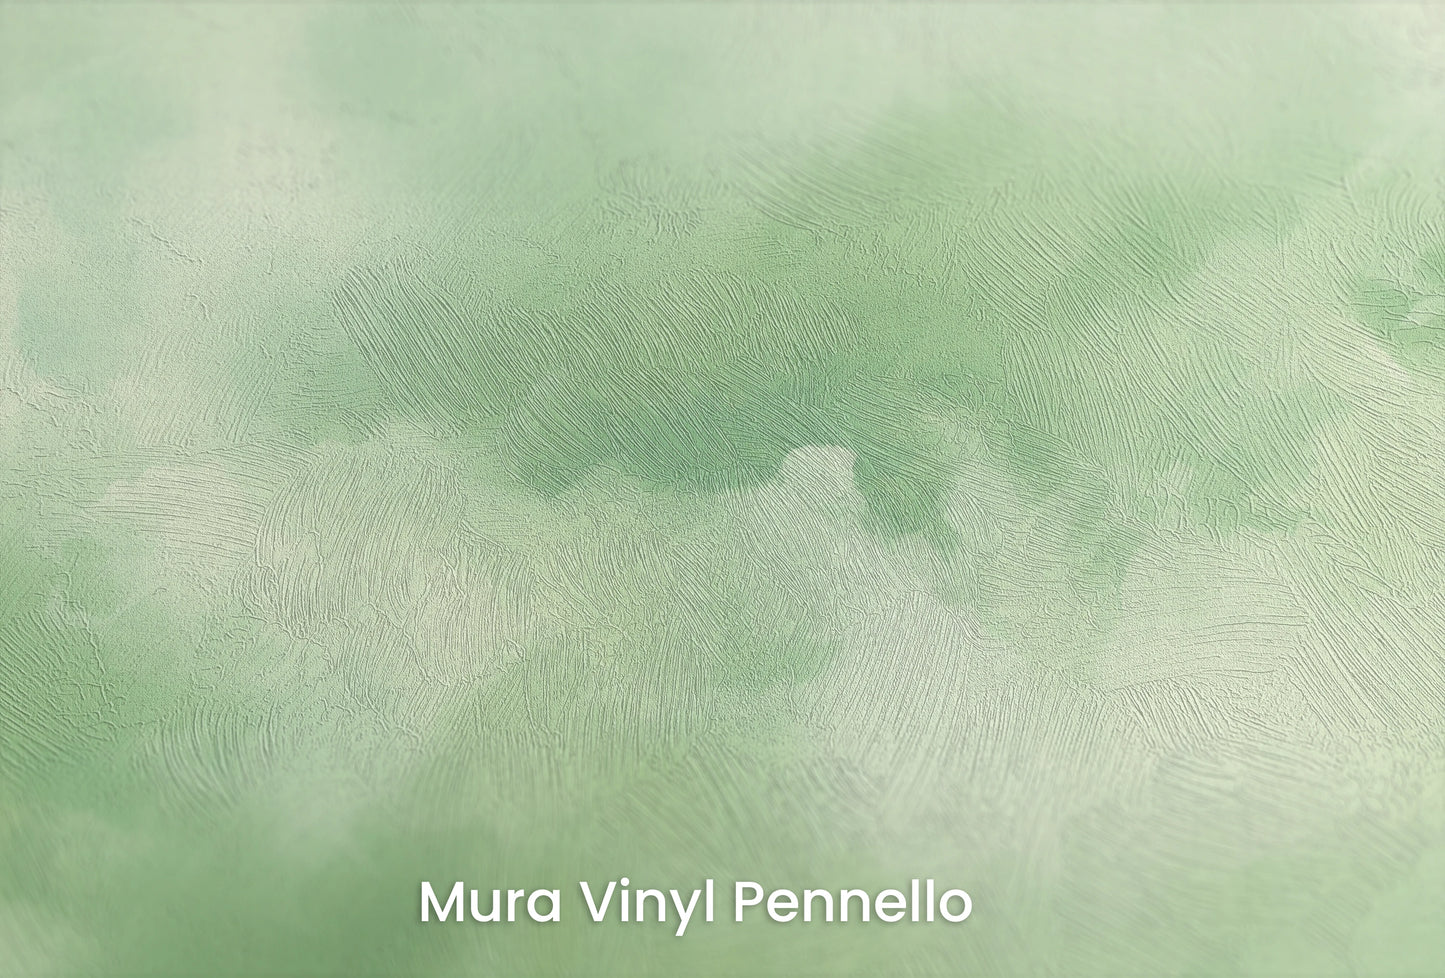 Zbliżenie na artystyczną fototapetę o nazwie Mint Serenity na podłożu Mura Vinyl Pennello - faktura pociągnięć pędzla malarskiego.